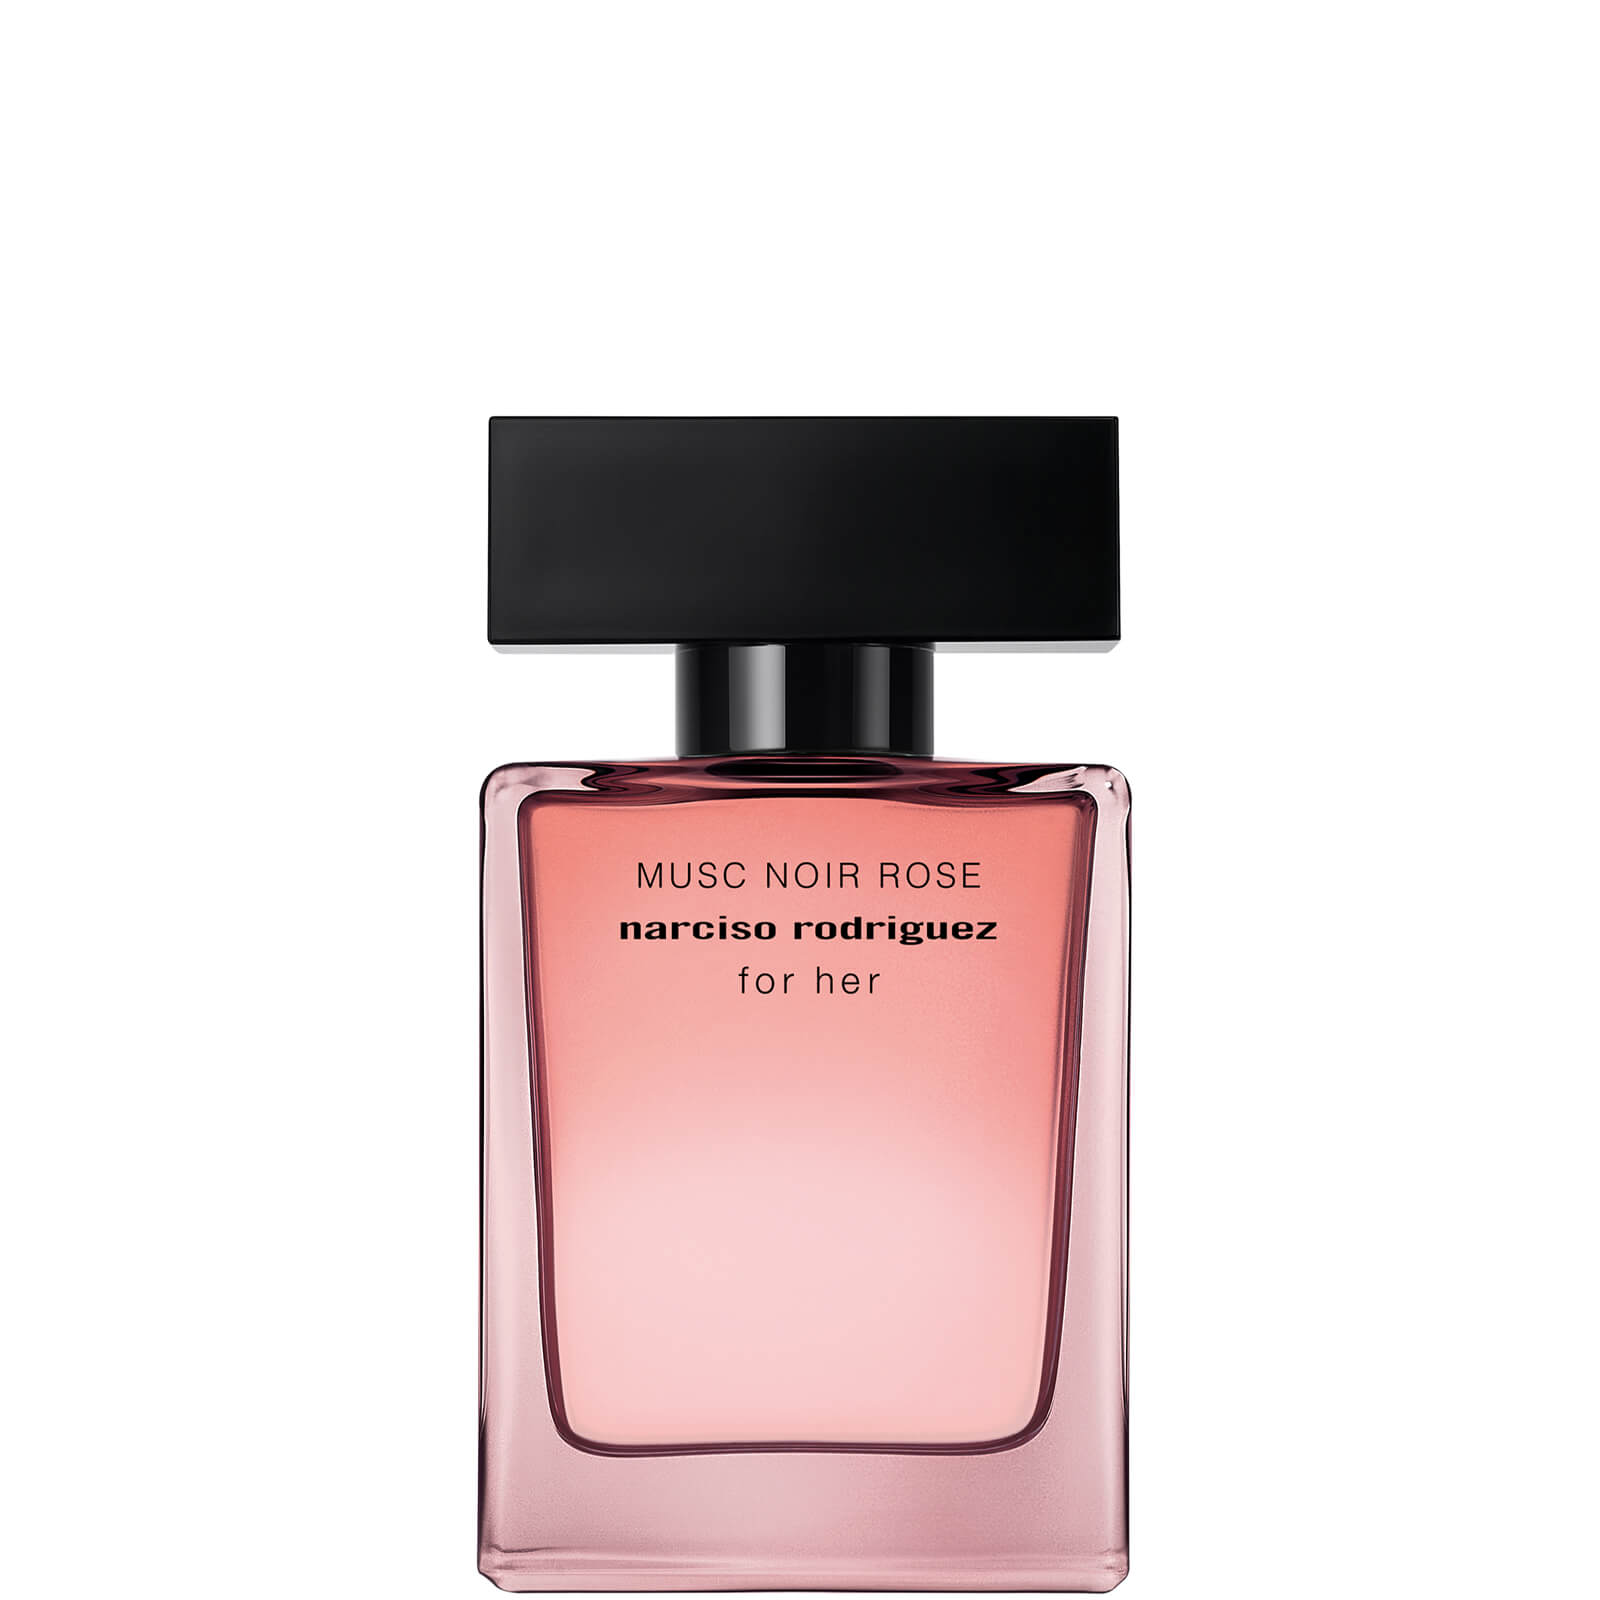 Image of Narciso Rodriguez for Her Musc Noir Rose Eau de Parfum Profumo 30ml